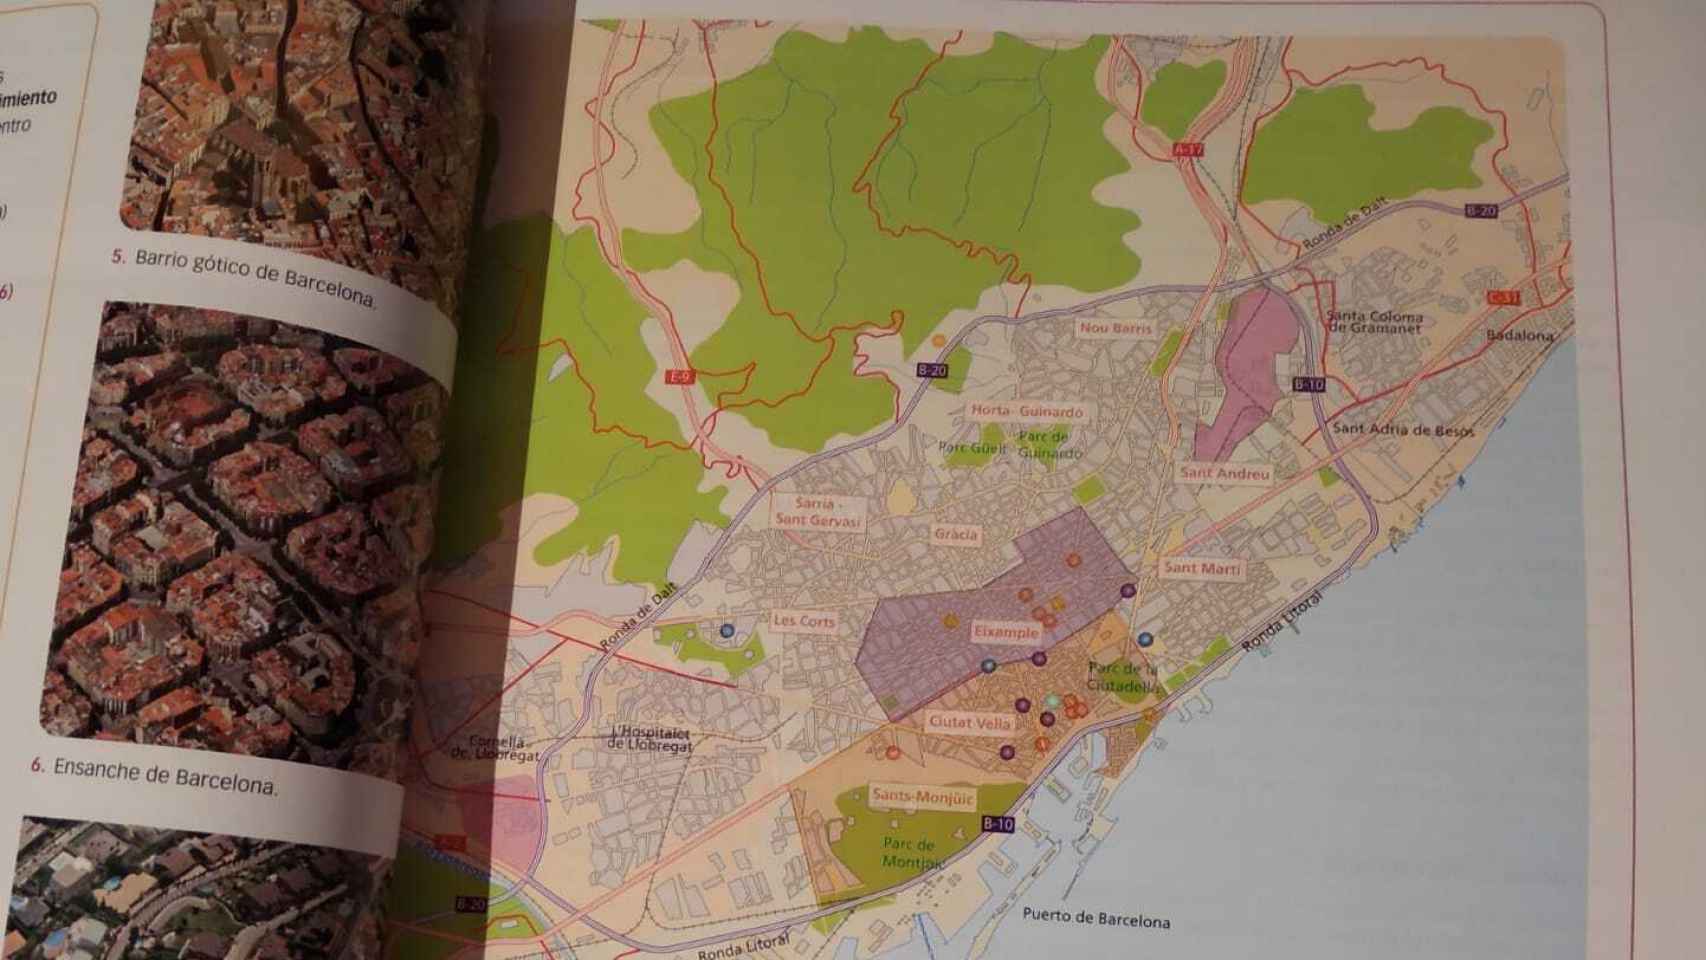 Plano urbano de Barcelona. La futura reina estudiará la configuración a través de un mapa de la Ciudad condal.